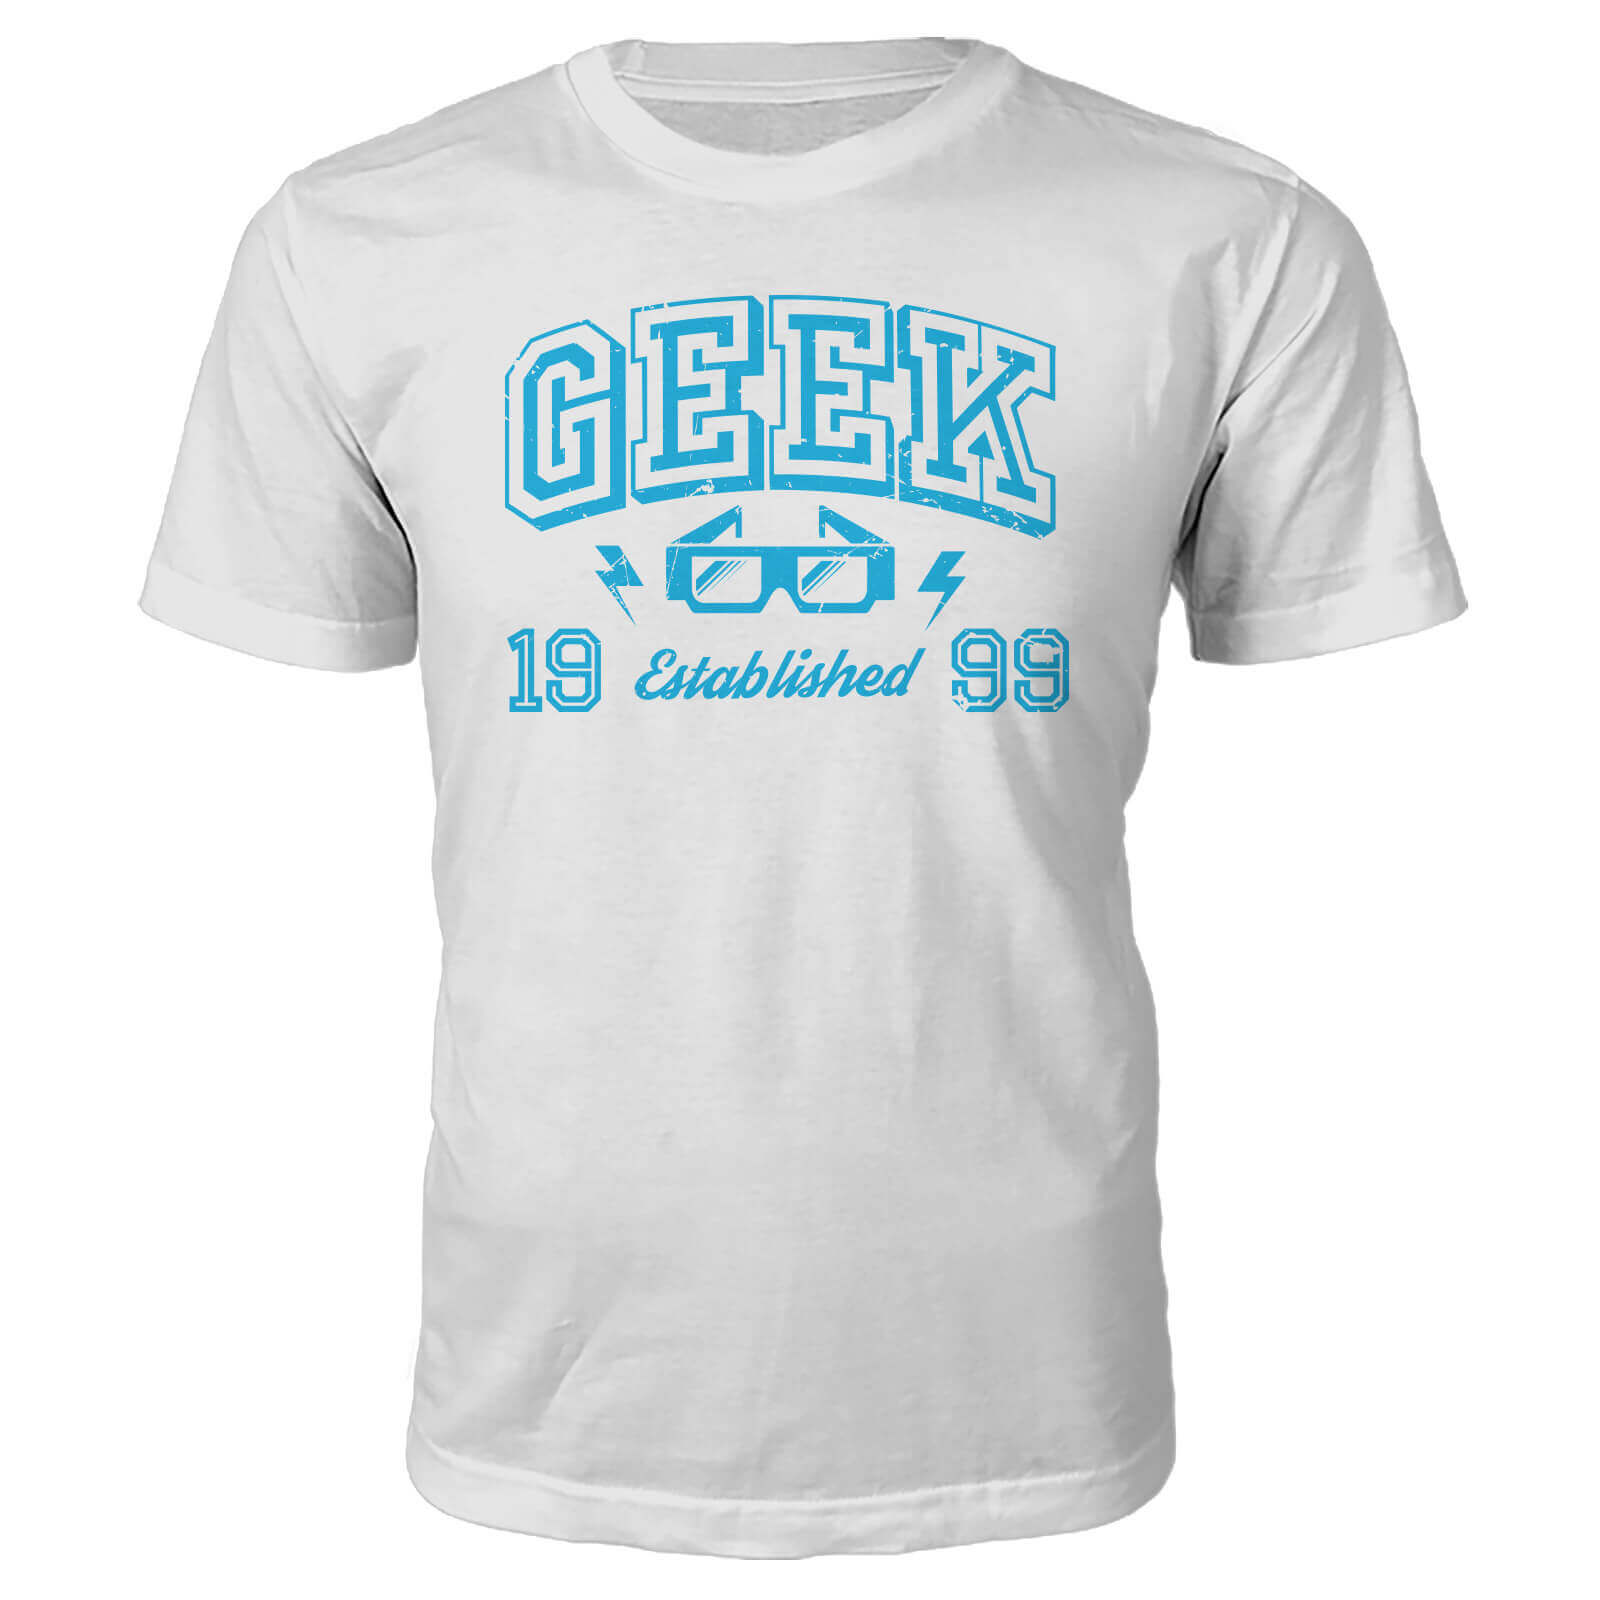 Geek Established 1990's T-Shirt- White - M - 1999